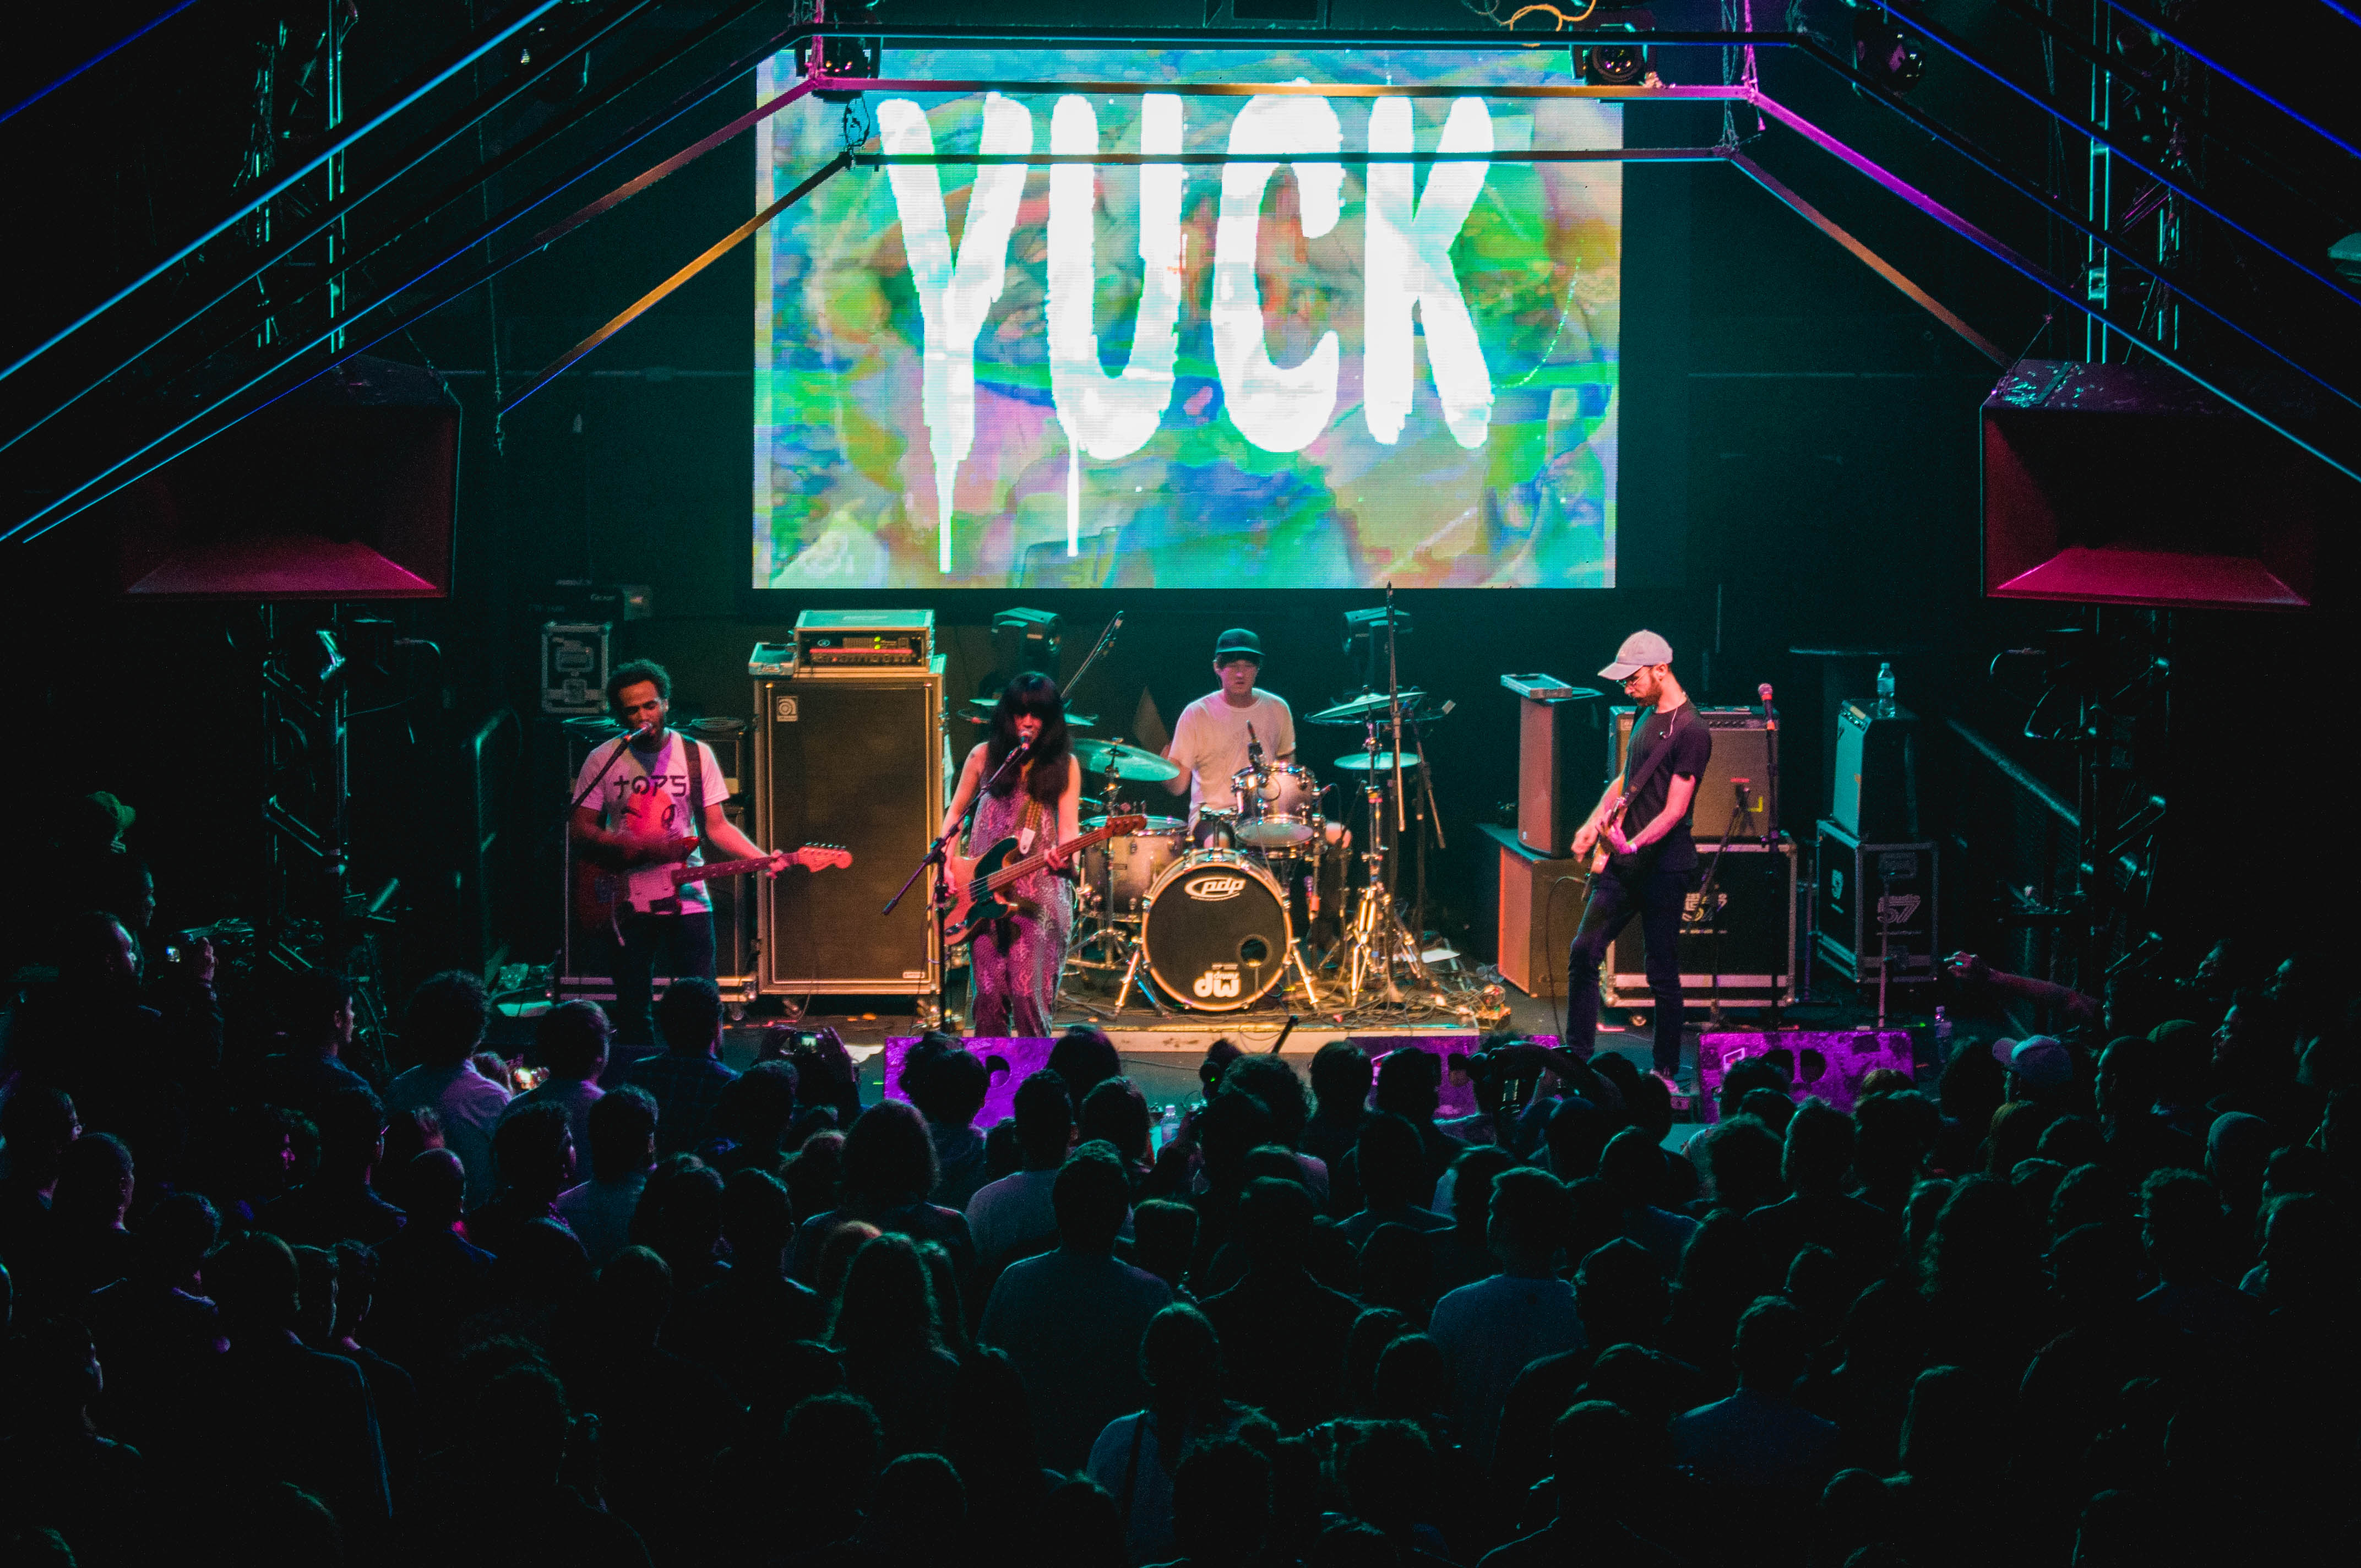 Yuck e seu grunge moderno participaram da edição de 2016